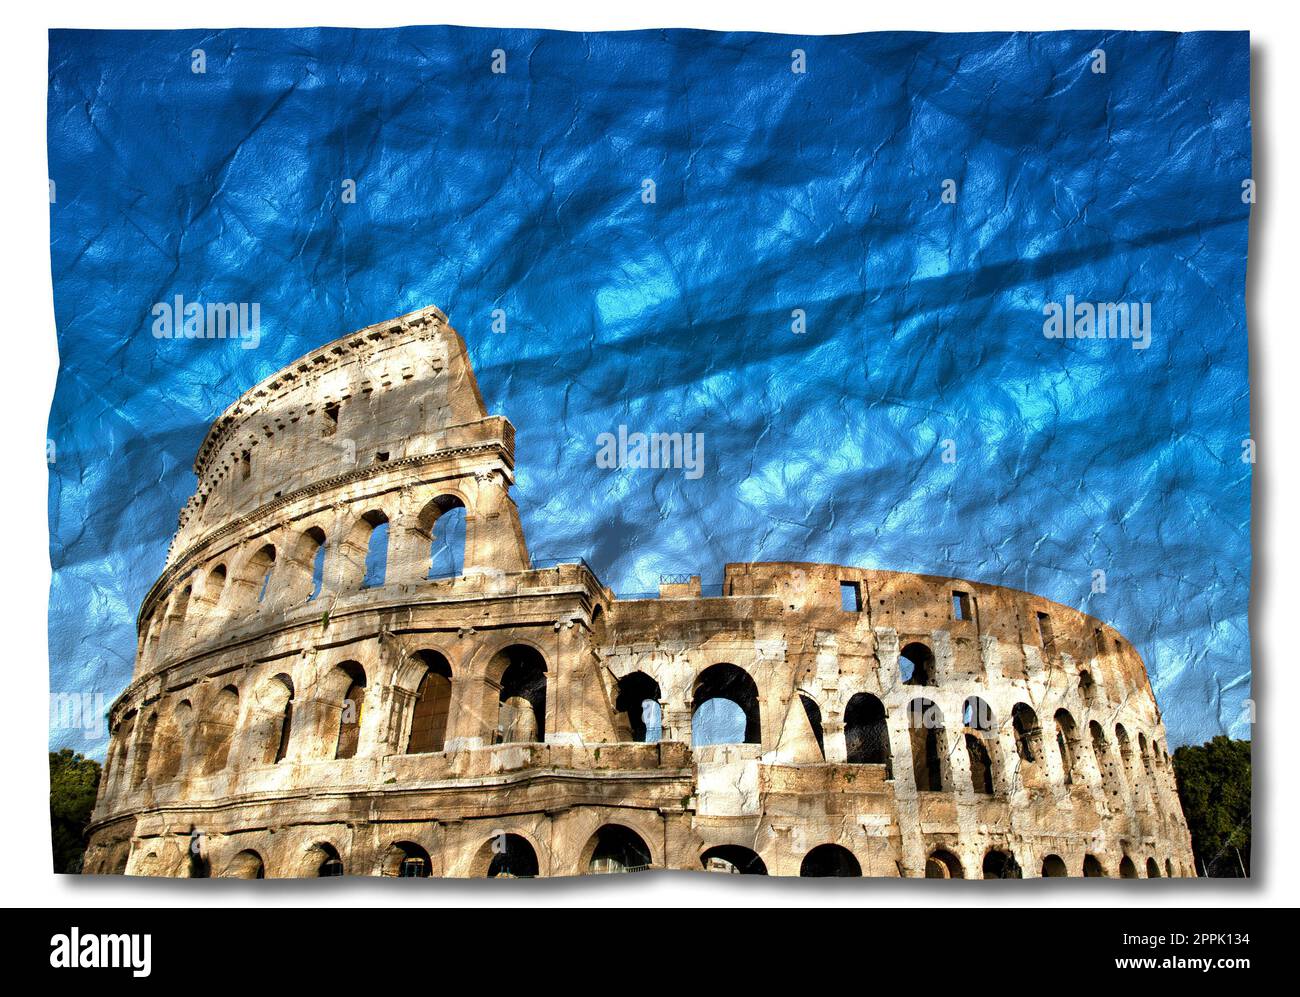 Italie, Rome - Colisée romain avec ciel bleu, le monument italien le plus célèbre. Banque D'Images